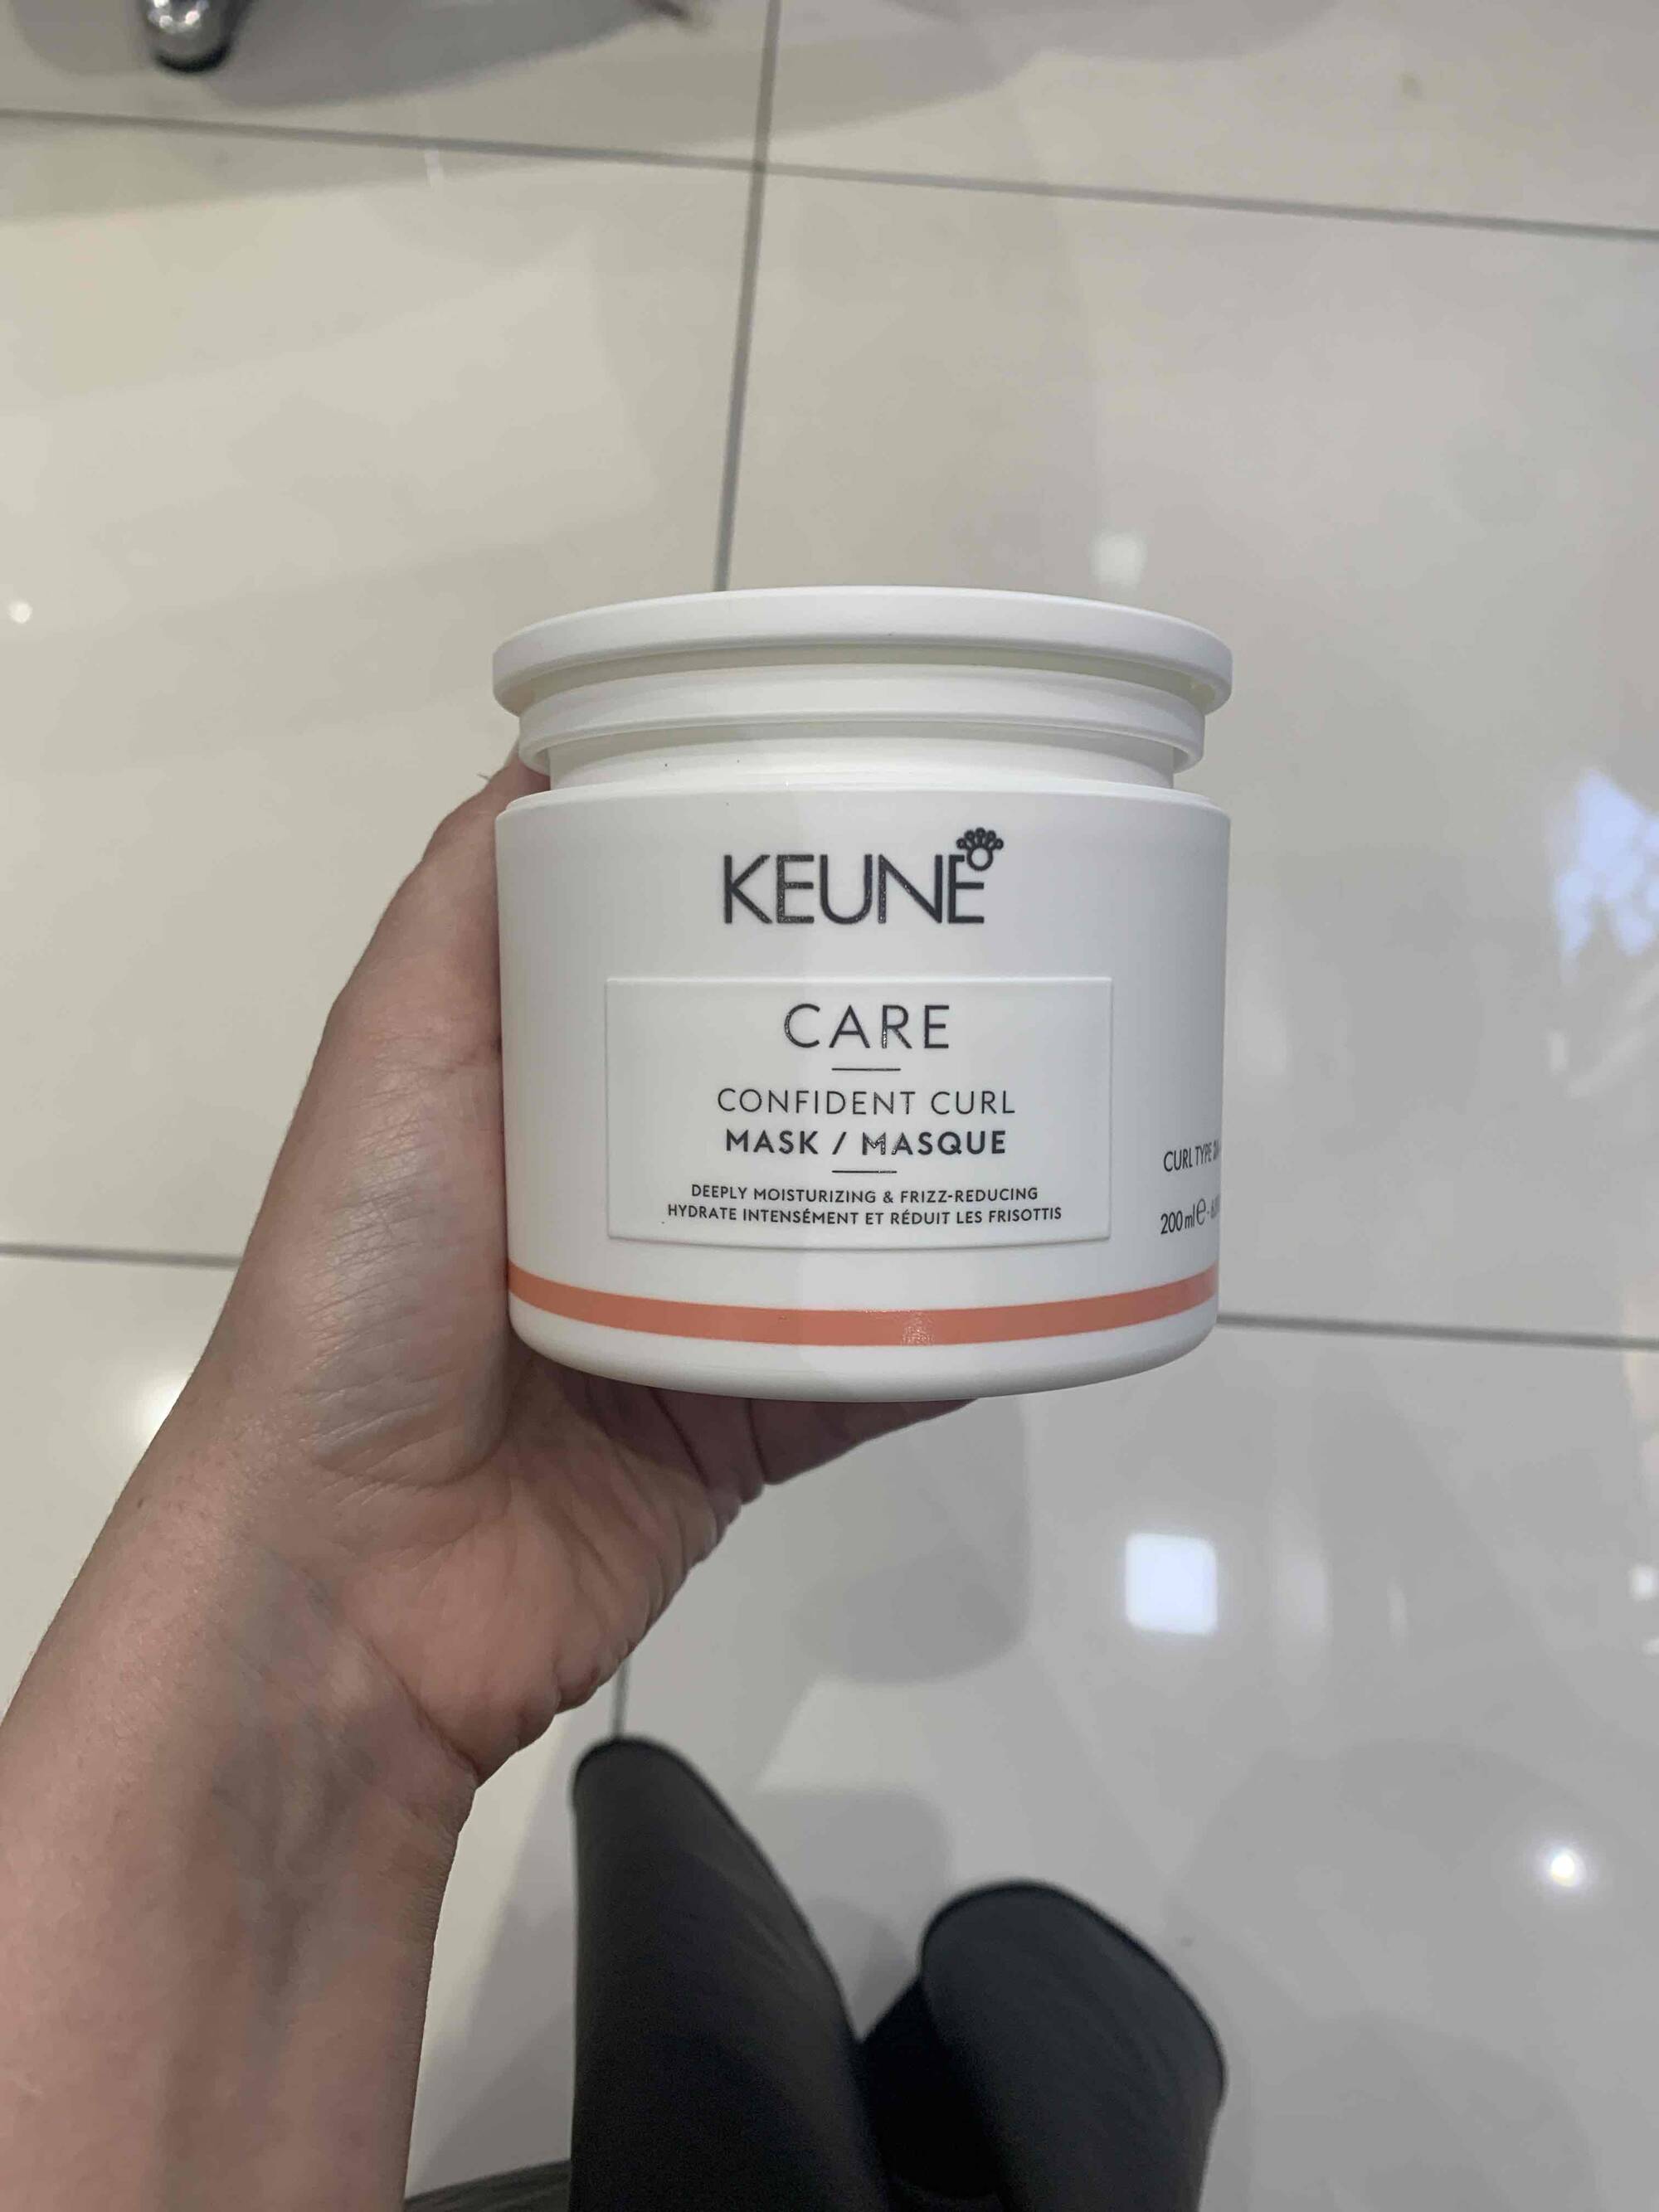 KEUNE - Care confident curl masque